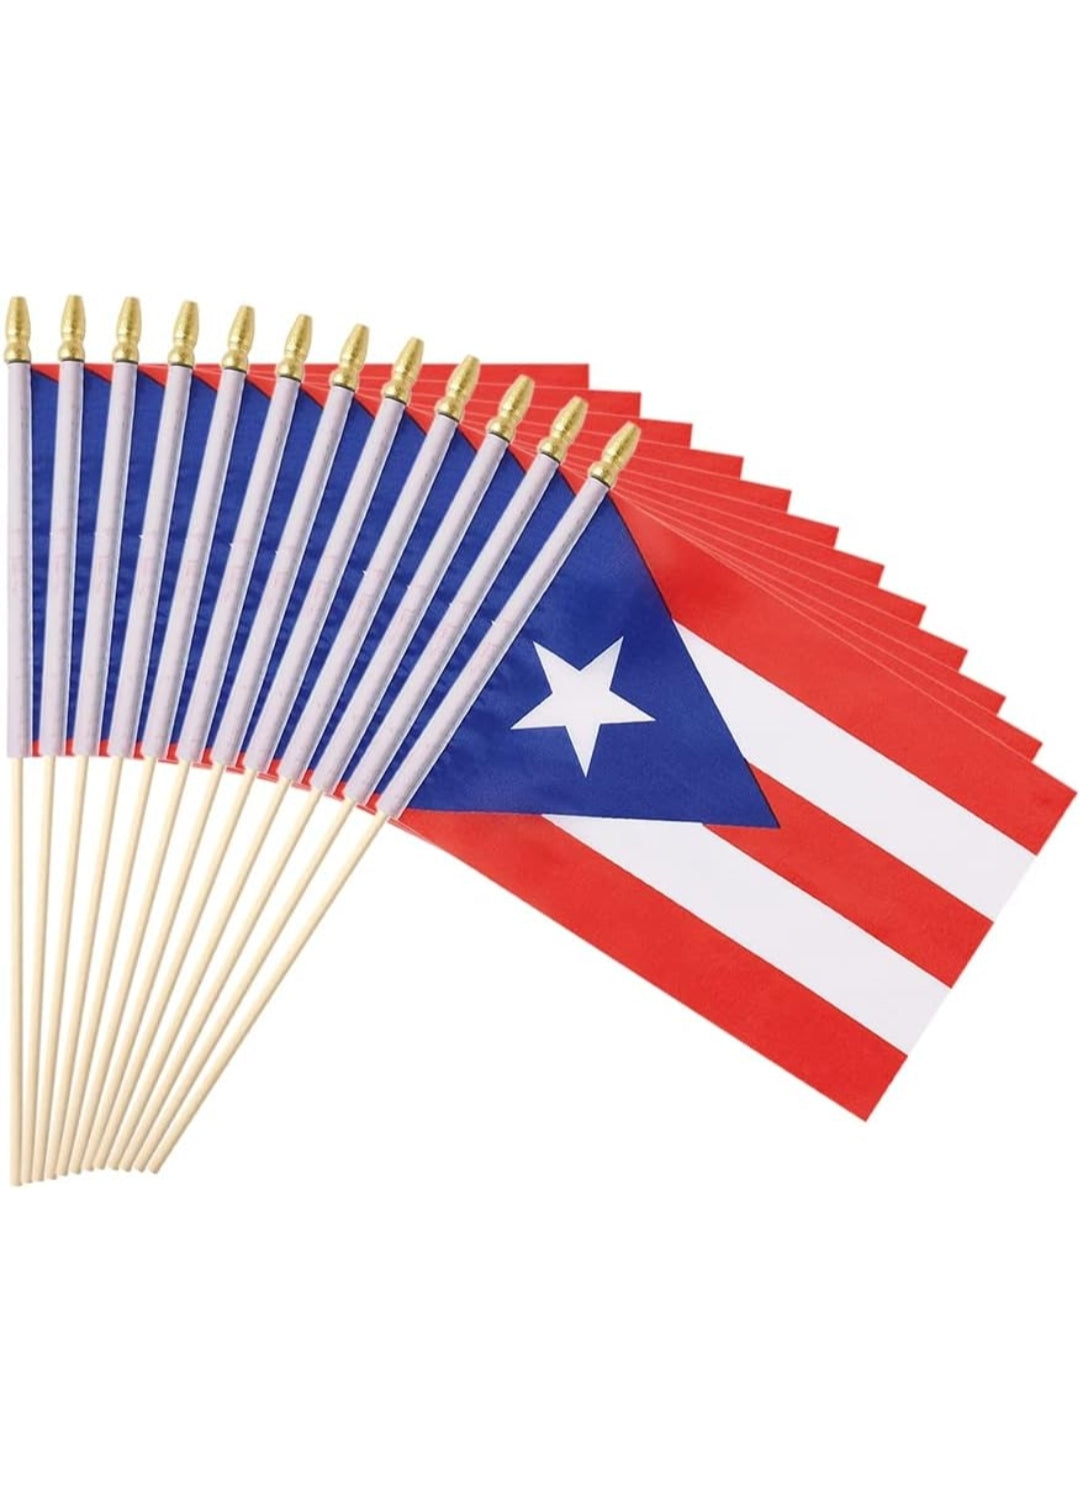 Banderas de Puerto Rico.            ( 5 x 8 Pulgadas)